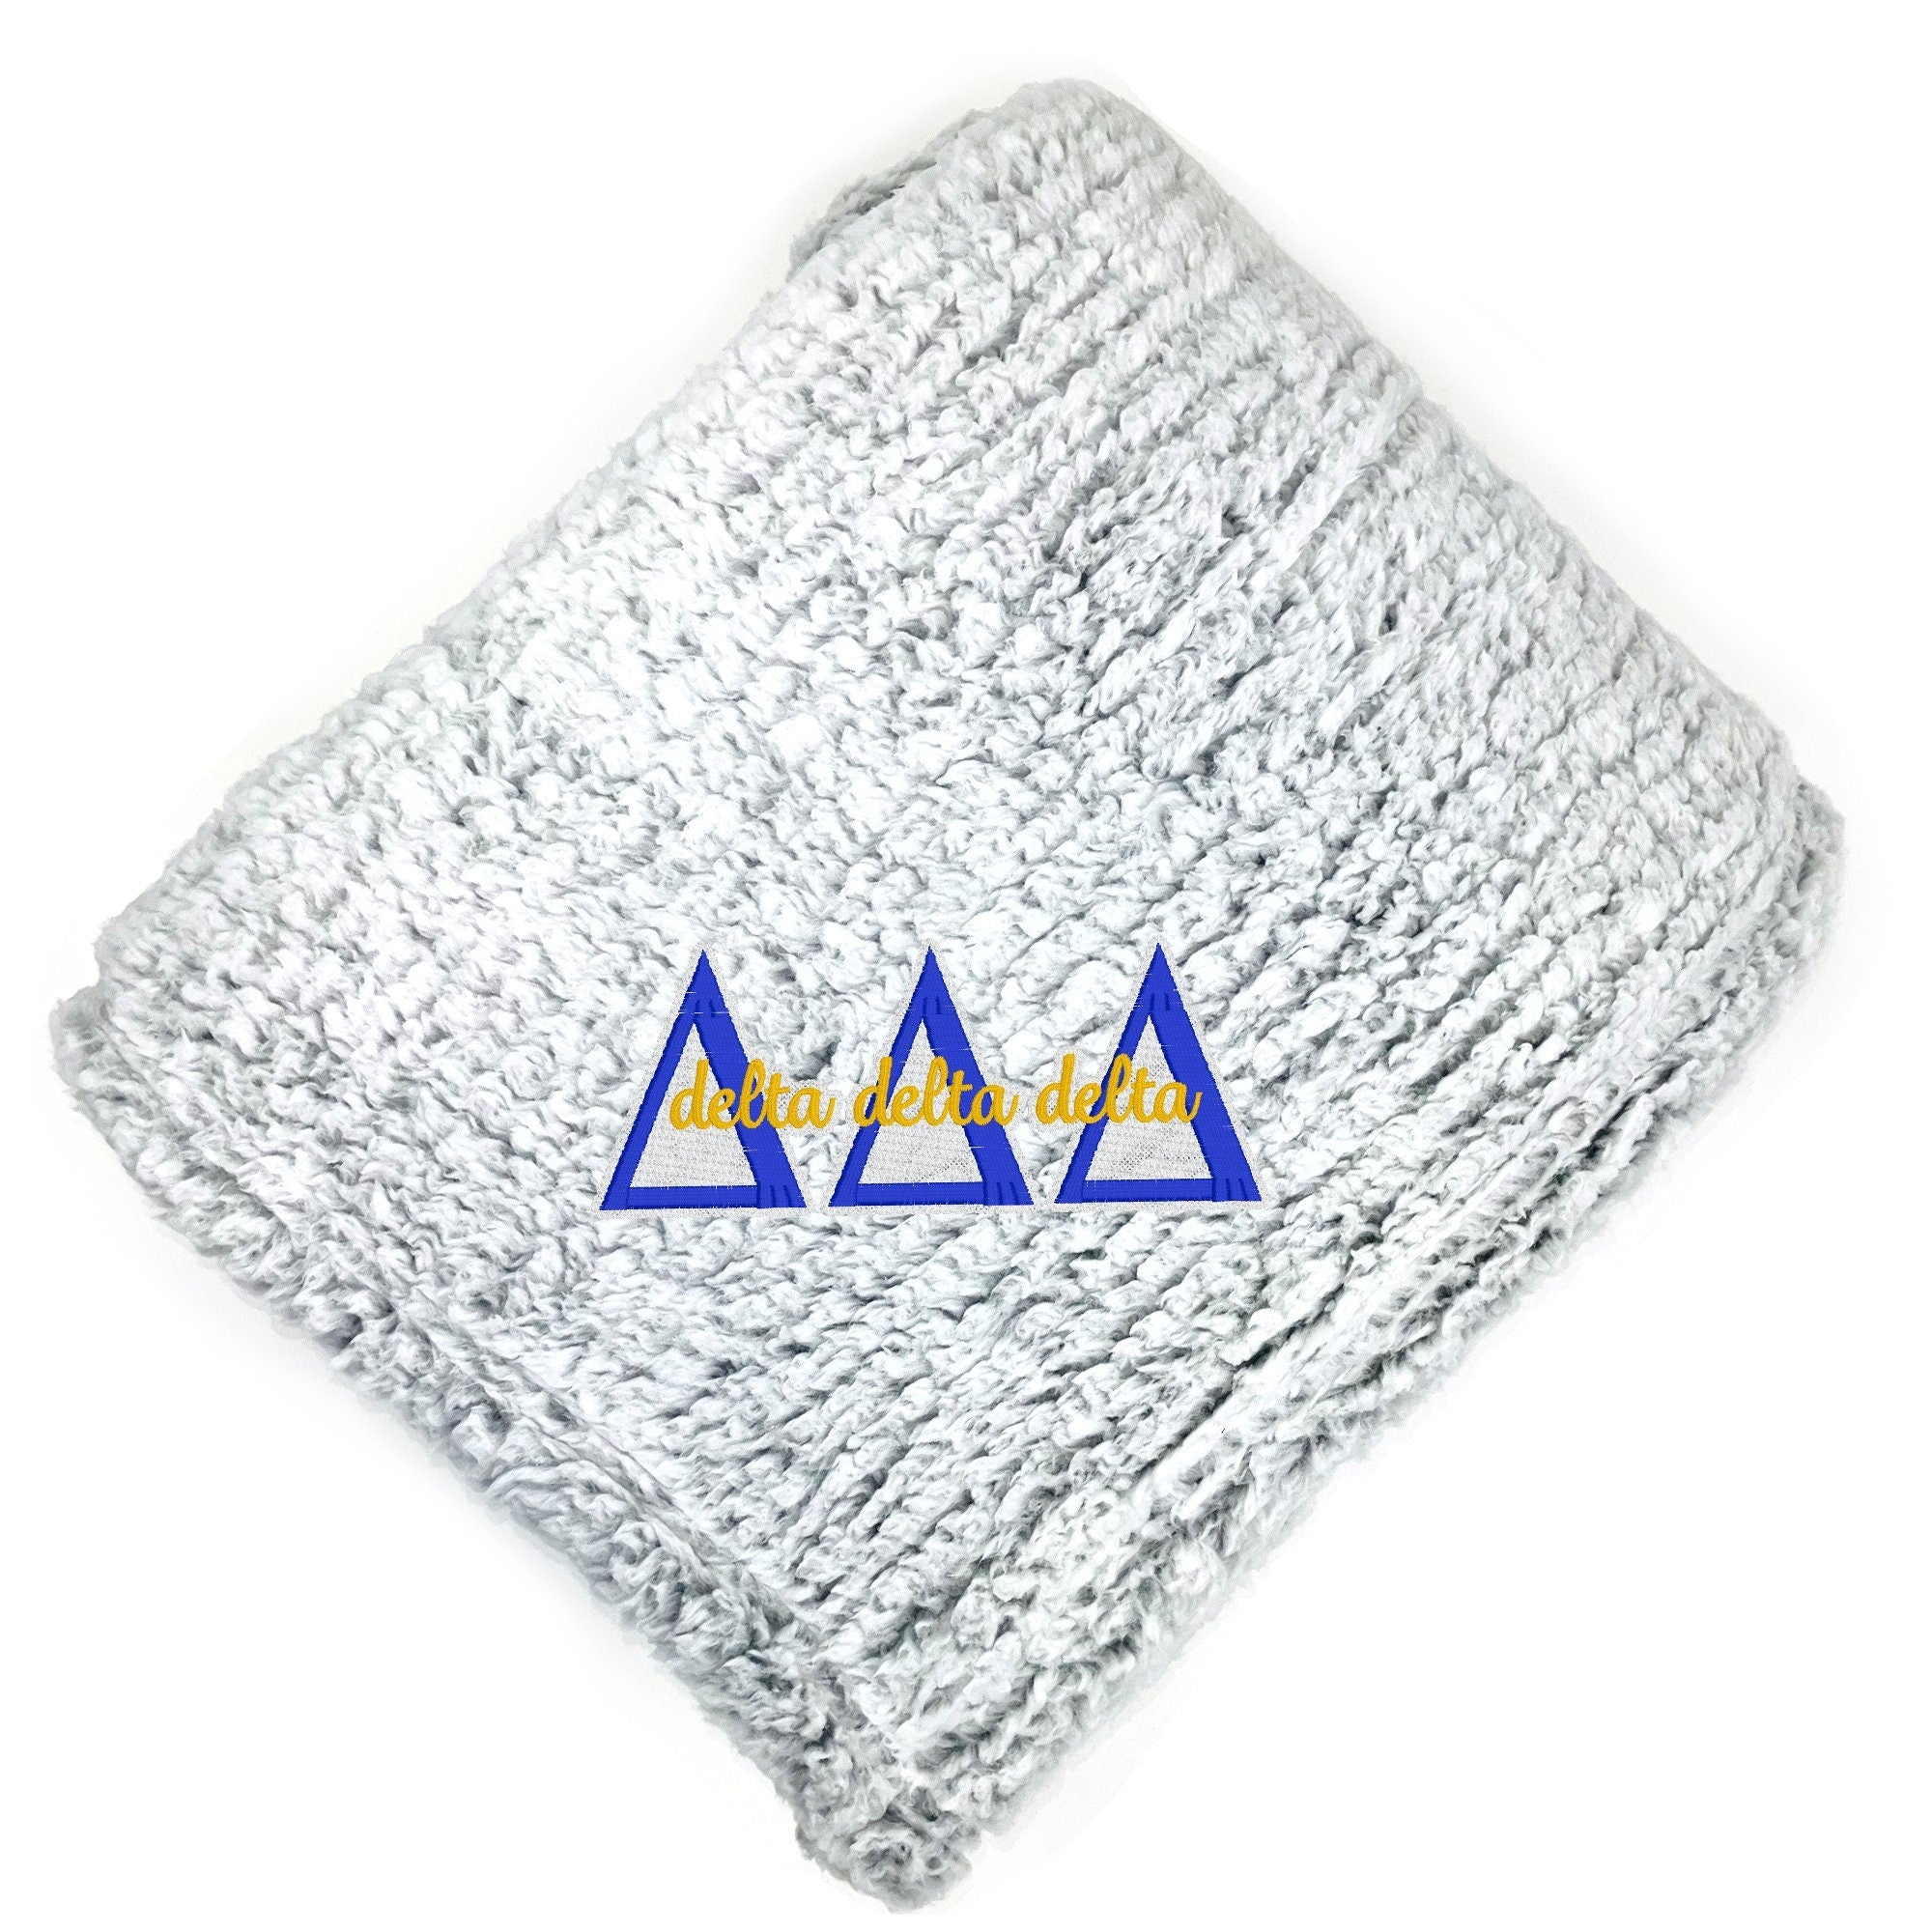 Delta Delta Delta Fuzzy Sherpa Blanket - Go Greek Chic